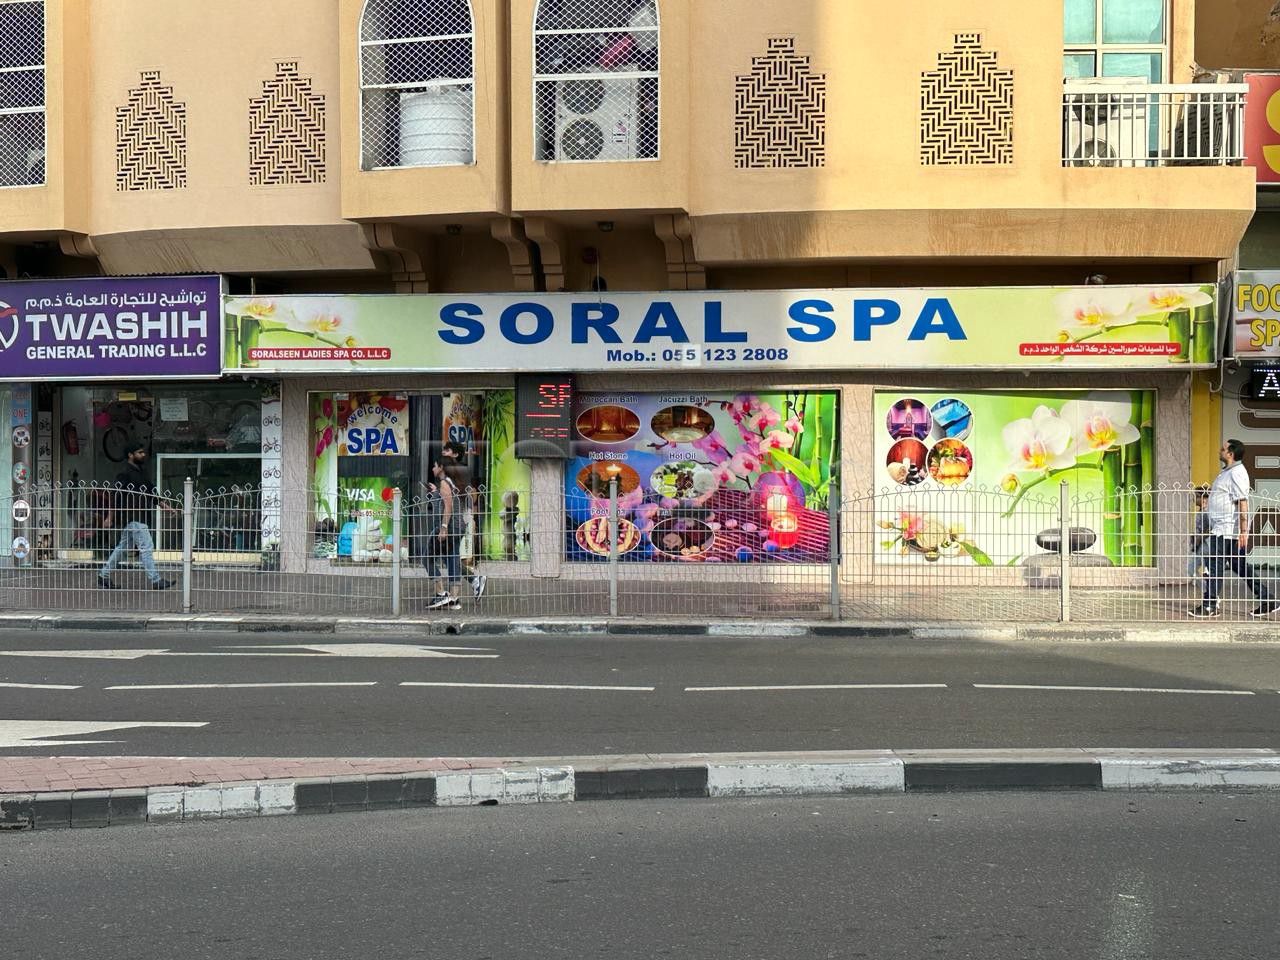 Dubai, United Arab Emirates Soral Spa